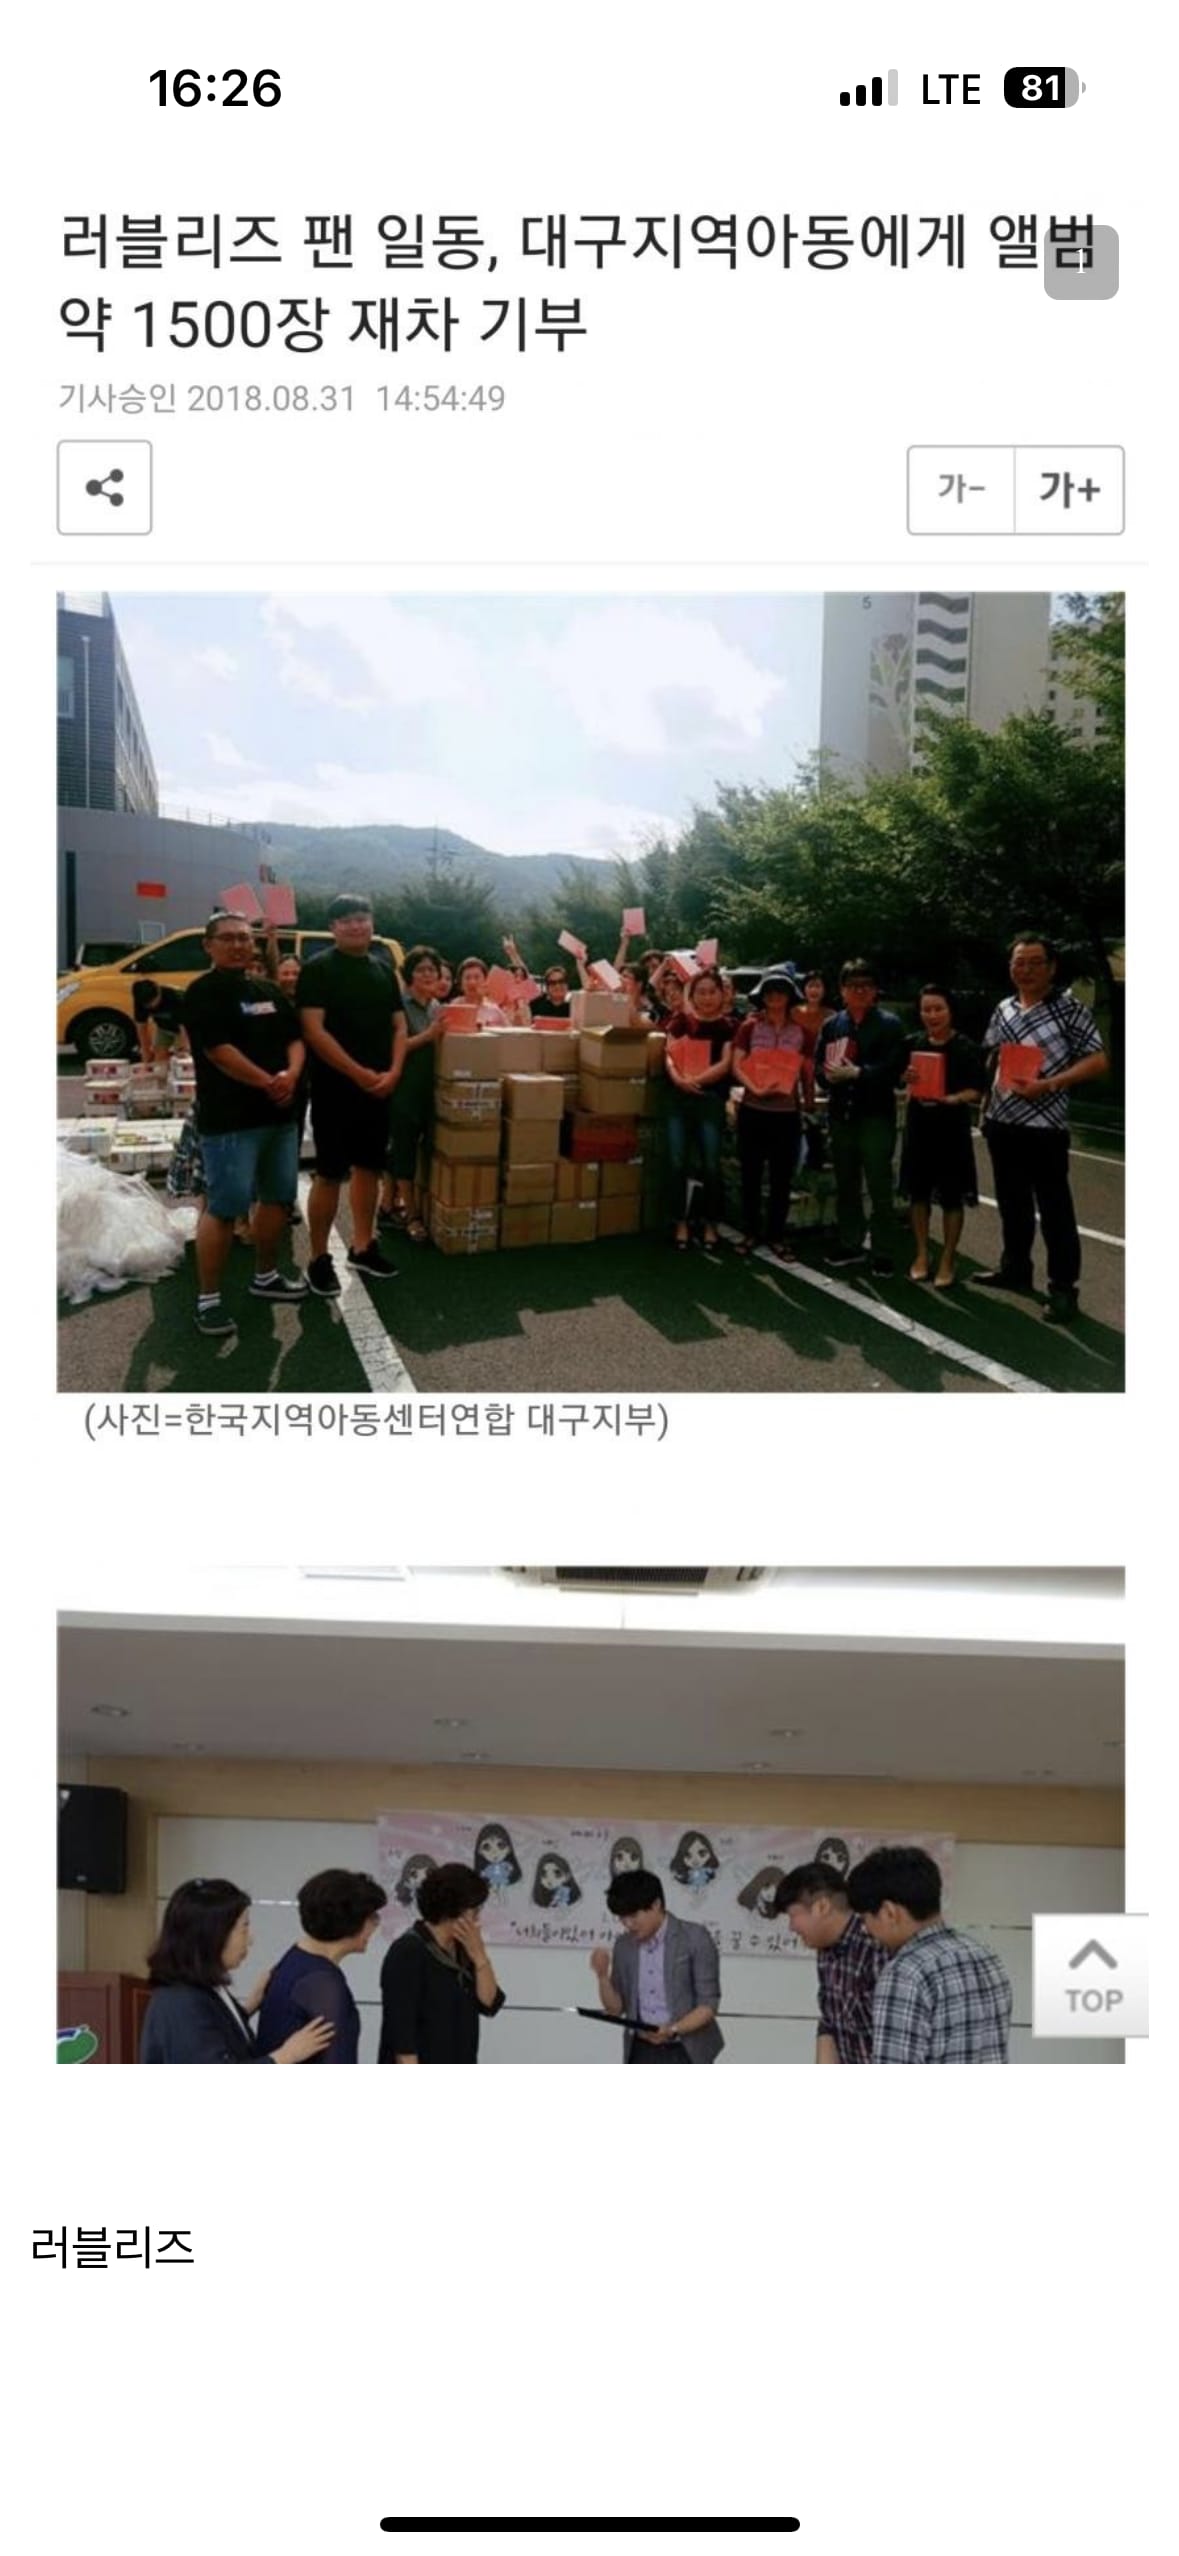 13 아이돌 팬덤의 아름다운 기부 문화.png